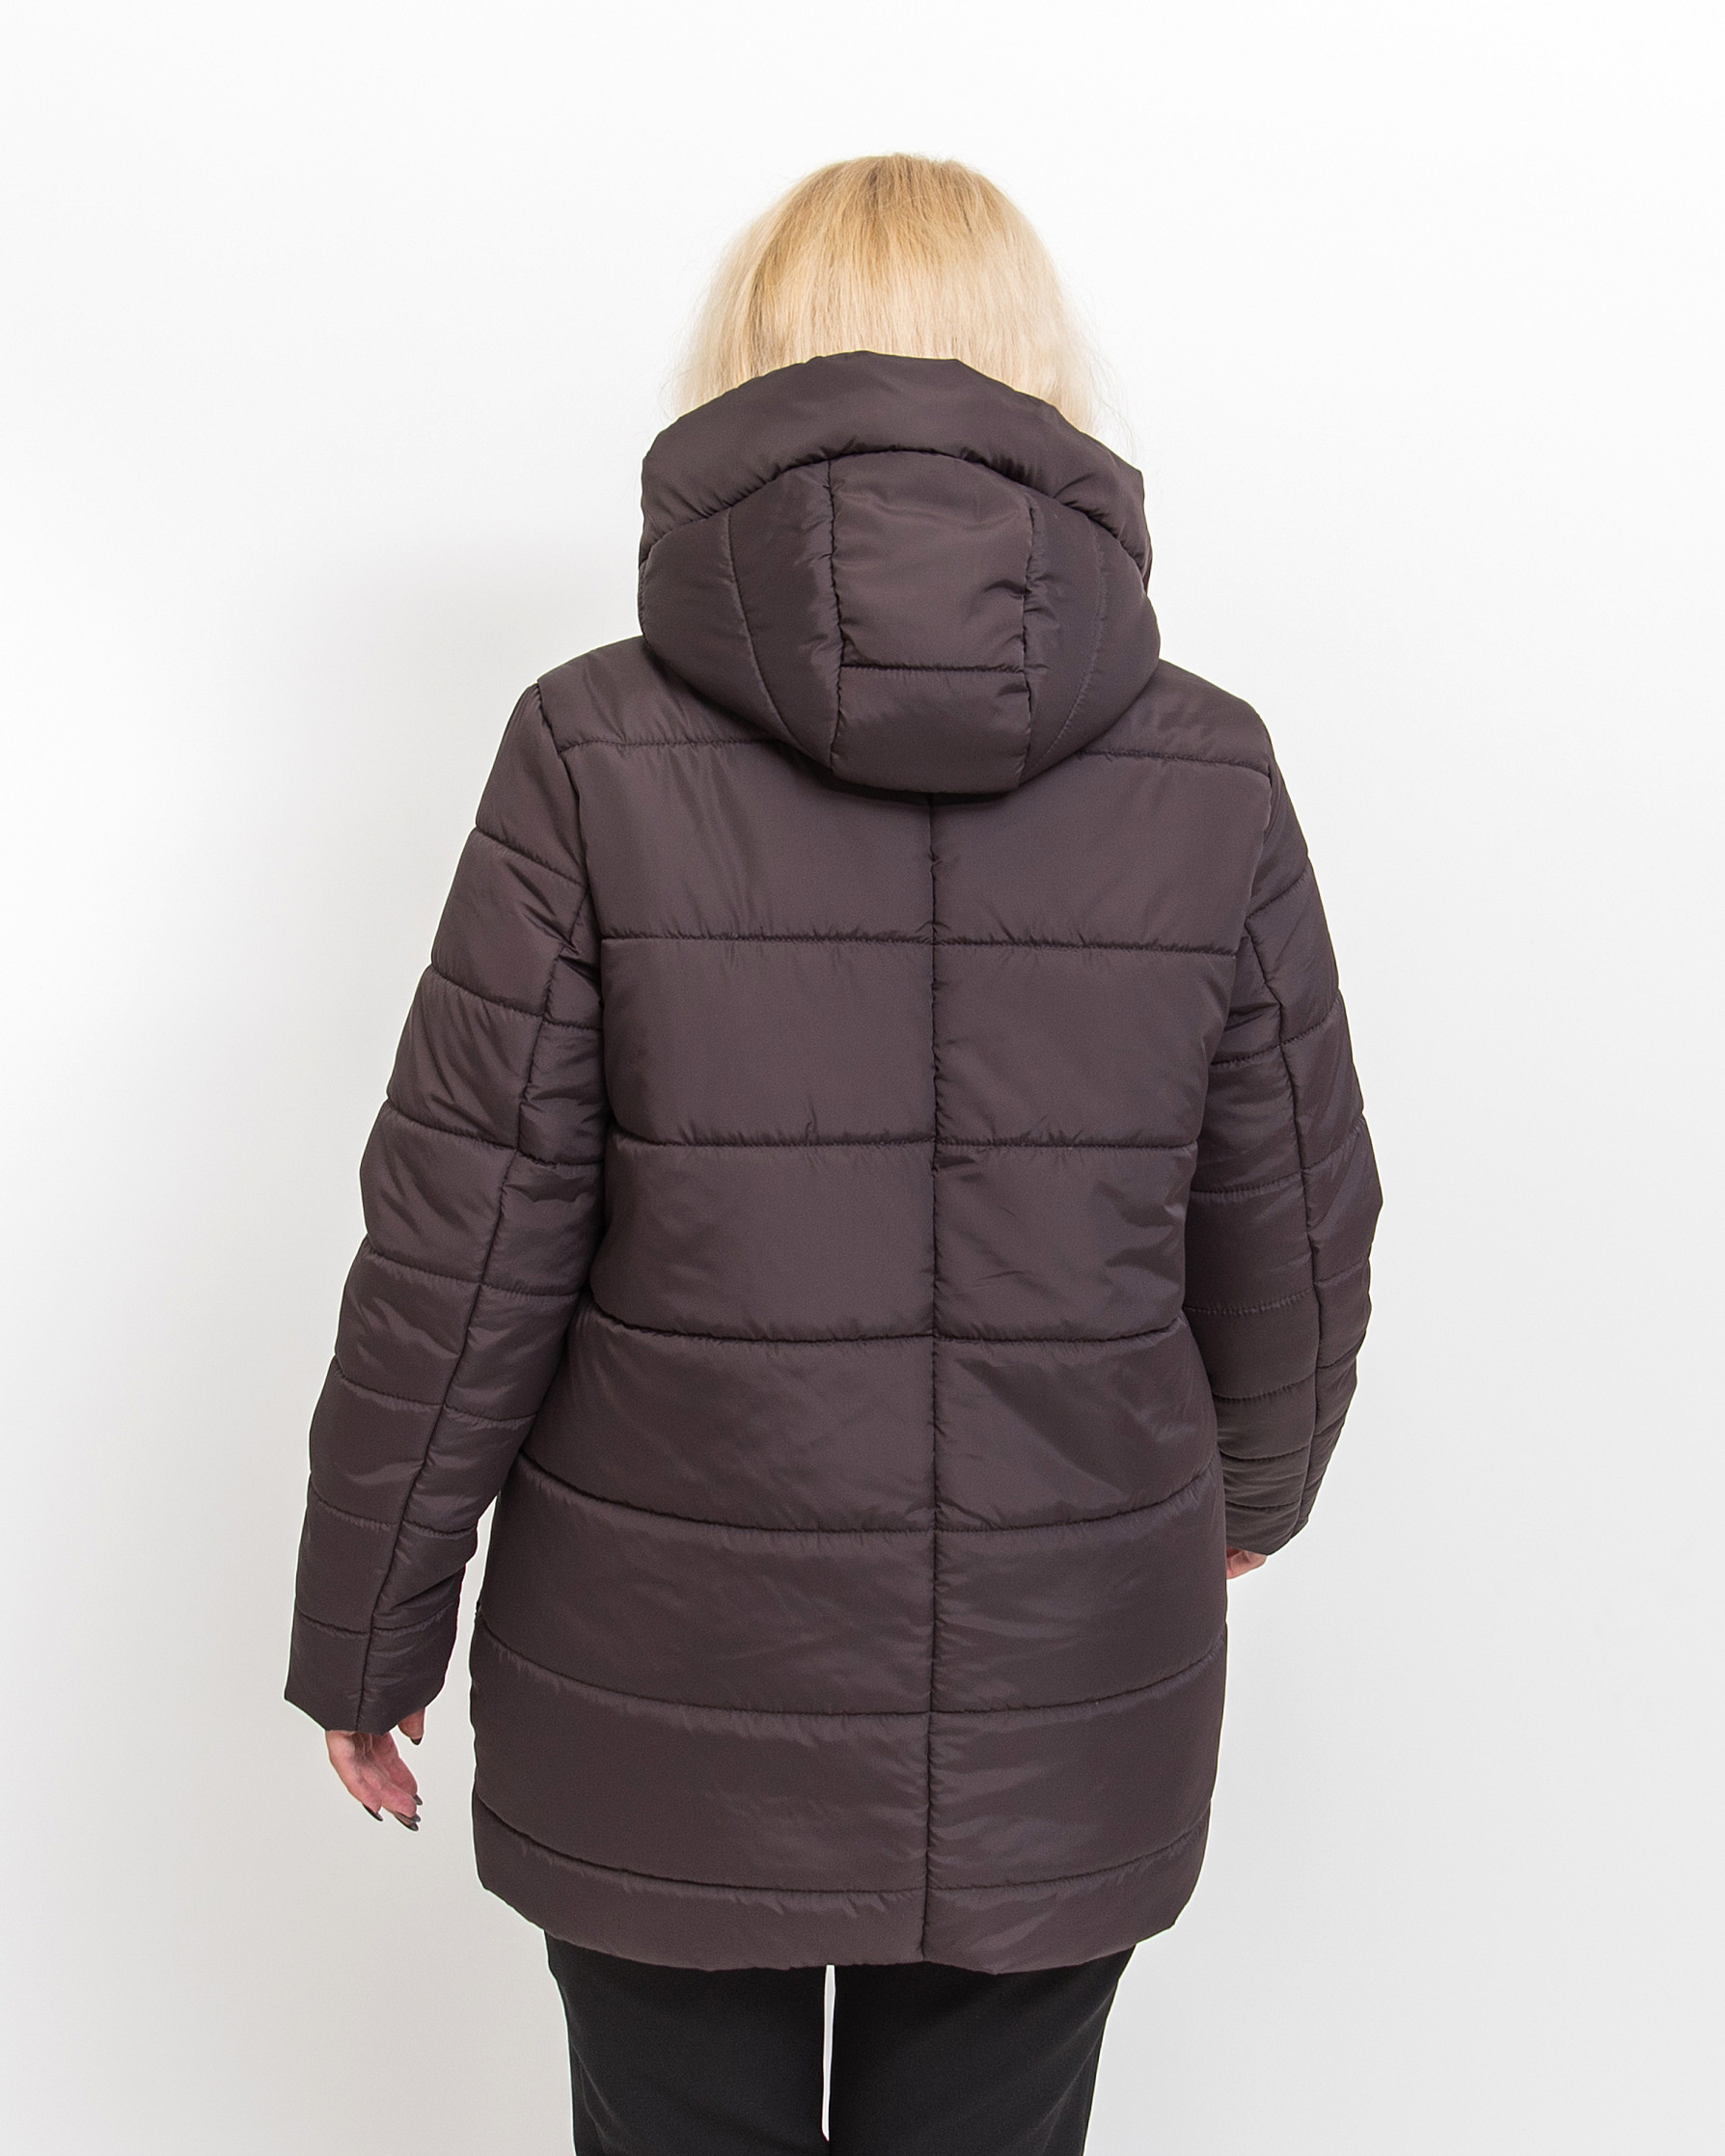 Демисезонная женская куртка Альма коричневого цвета